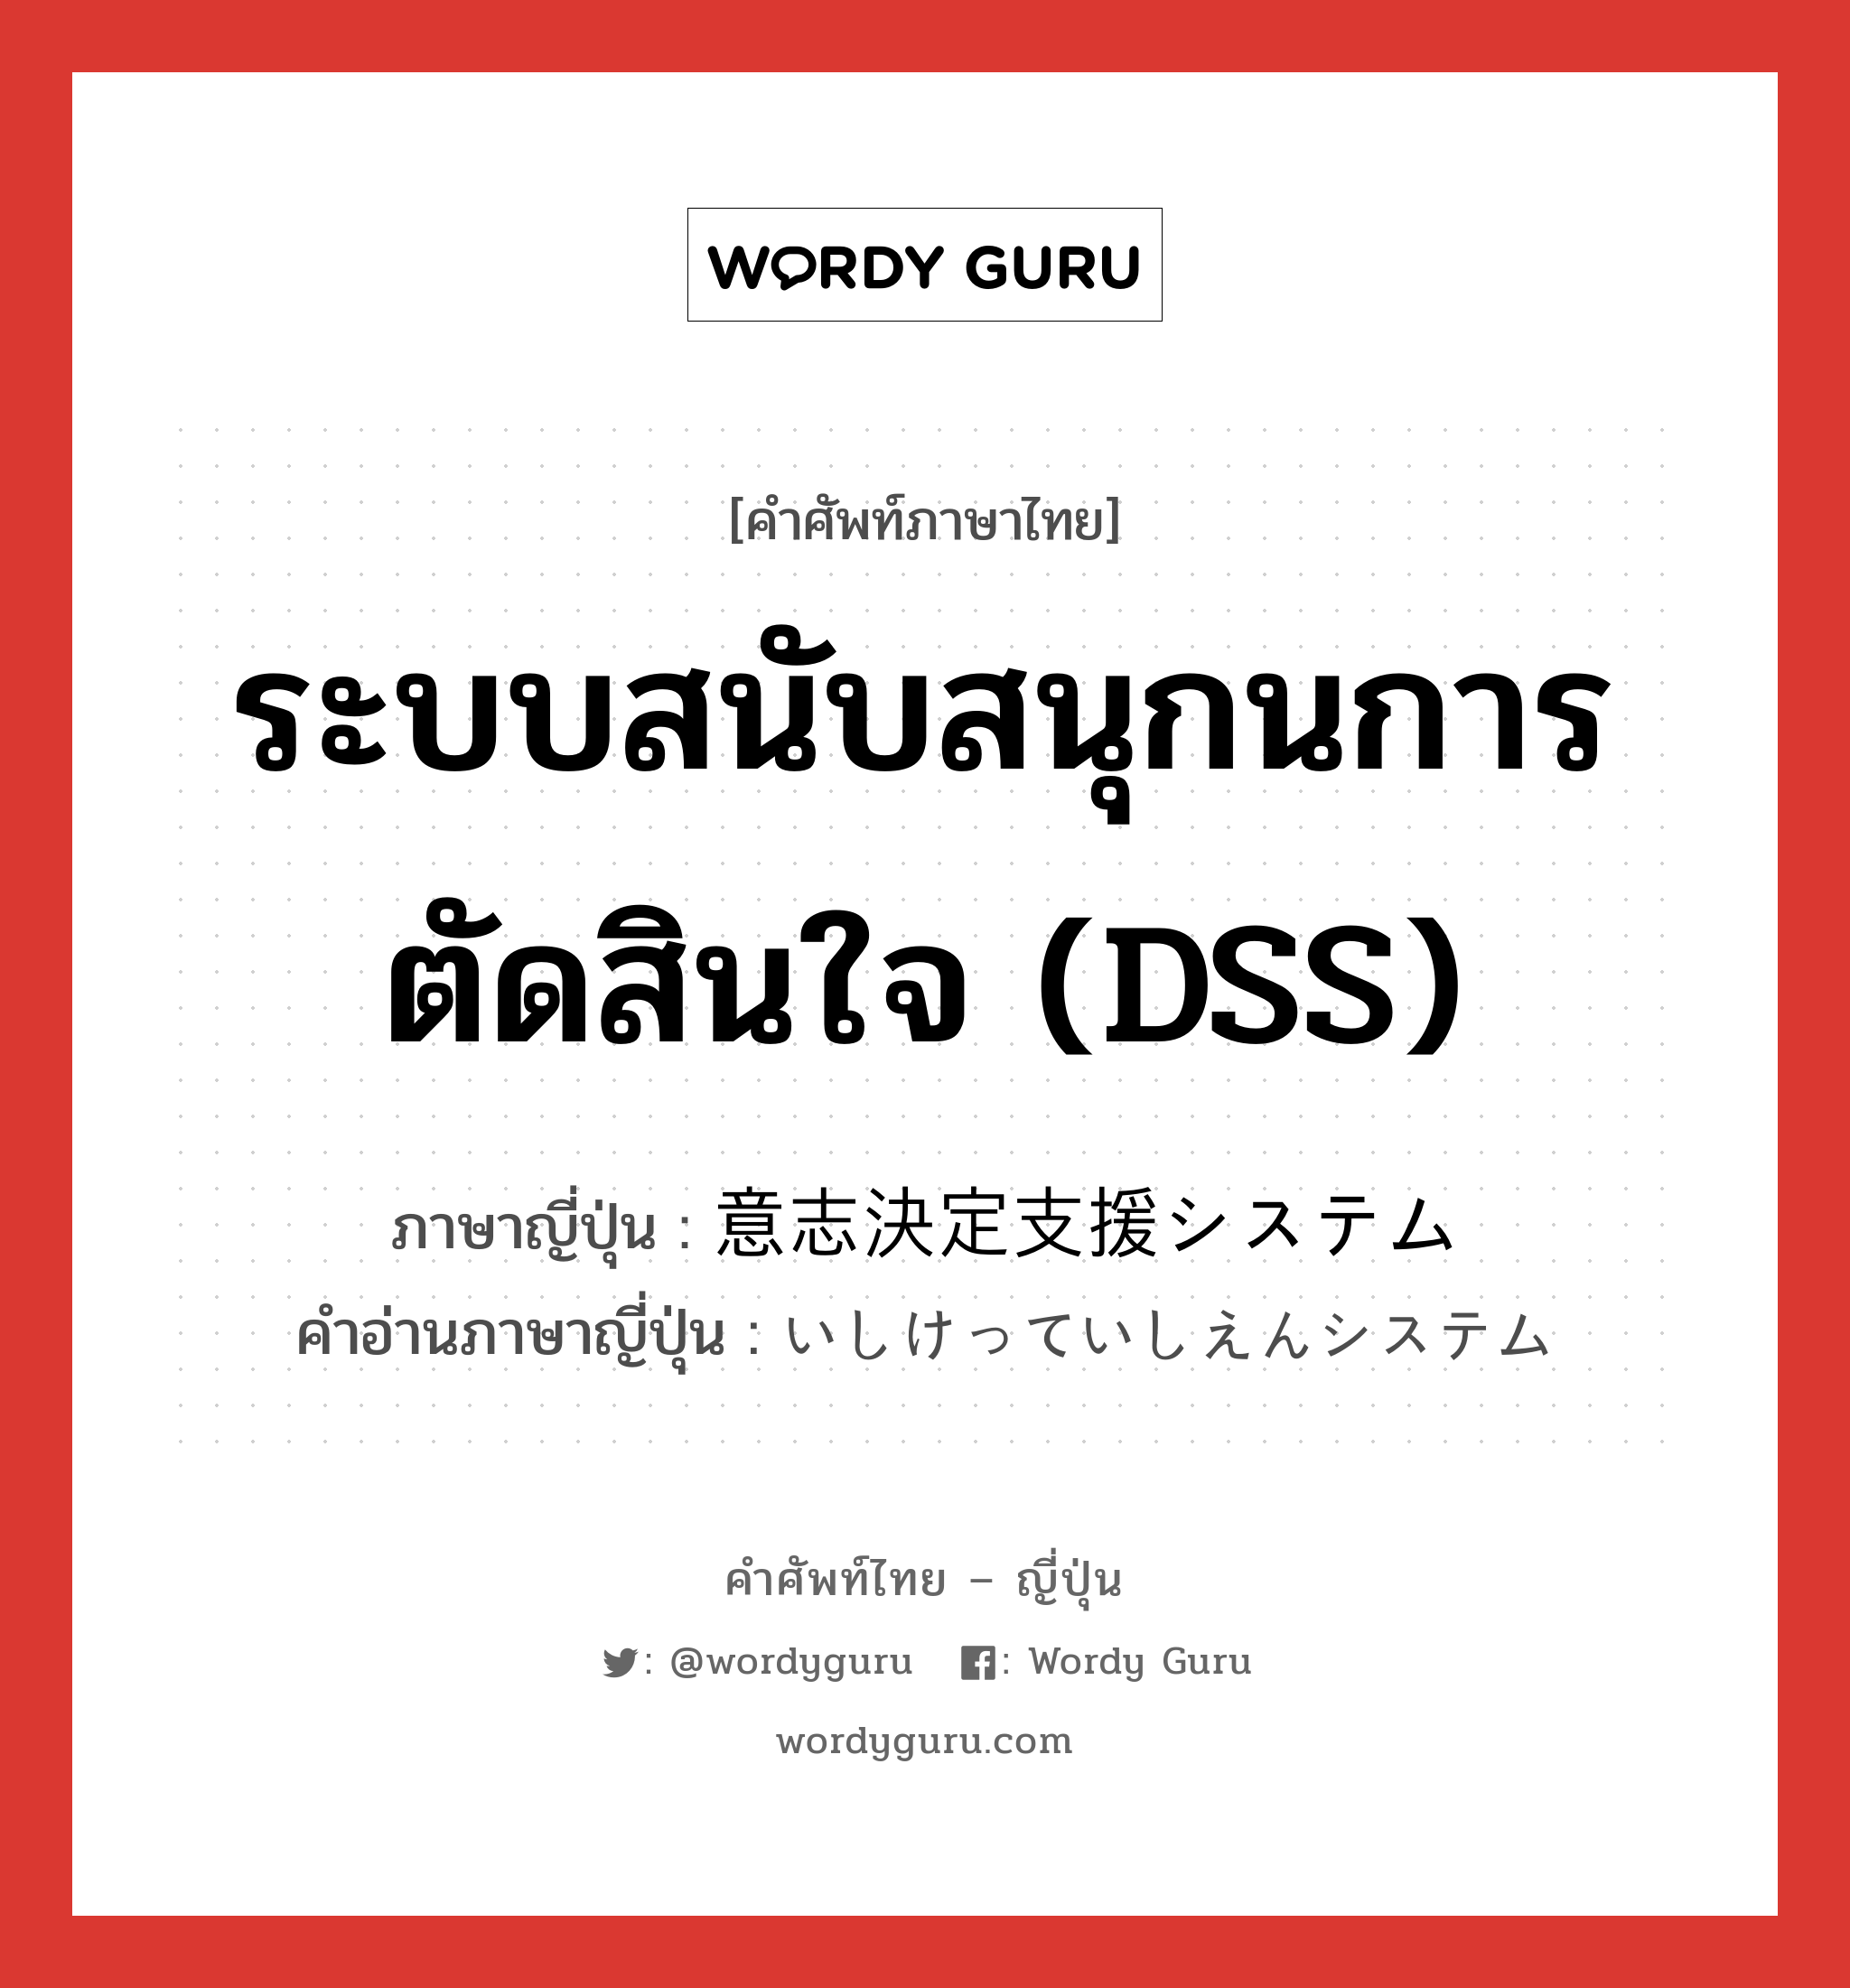 ระบบสนับสนุกนการตัดสินใจ (DSS) ภาษาญี่ปุ่นคืออะไร, คำศัพท์ภาษาไทย - ญี่ปุ่น ระบบสนับสนุกนการตัดสินใจ (DSS) ภาษาญี่ปุ่น 意志決定支援システム คำอ่านภาษาญี่ปุ่น いしけっていしえんシステム หมวด n หมวด n